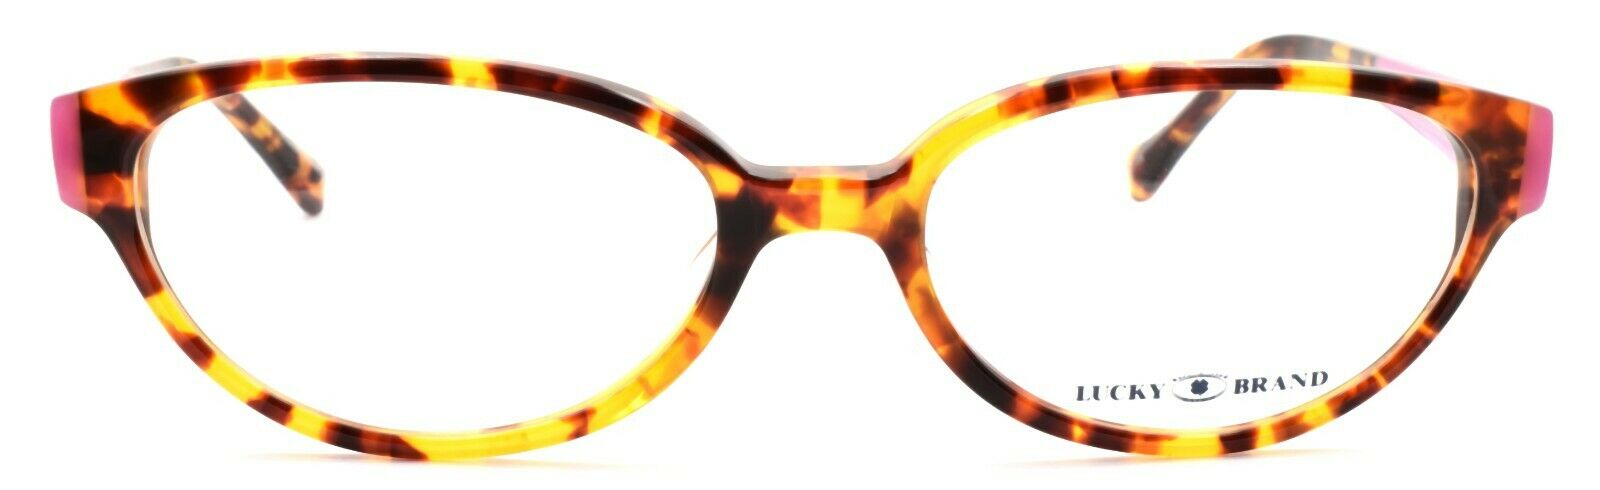 2-LUCKY BRAND Sunrise UF Women's Eyeglasses Frames 52-17-140 Havana Tortoise +CASE-751286256635-IKSpecs